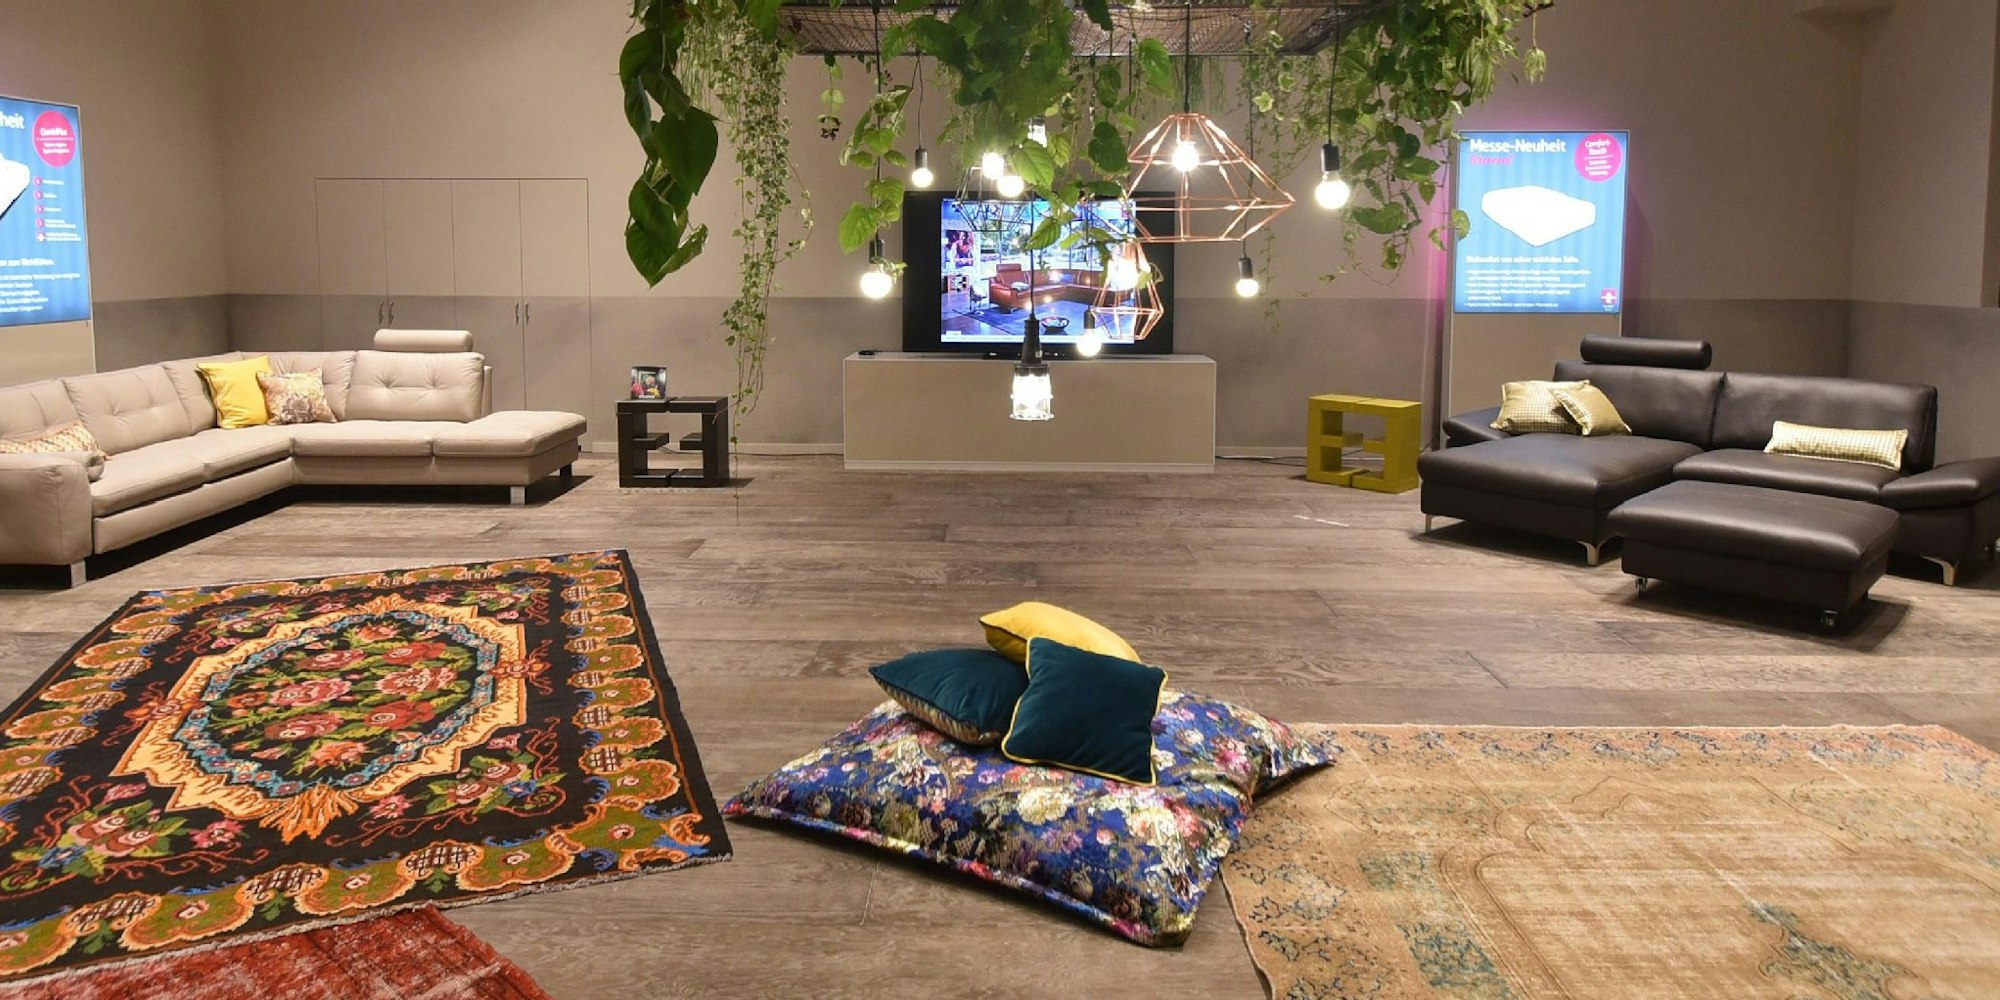 Großzügige Wohnwelten mit bunten Teppichen und Kissen, die Akzente setzen - so stellt sich Hersteller Ewald Schillig das zeitgemäße Heim vor.